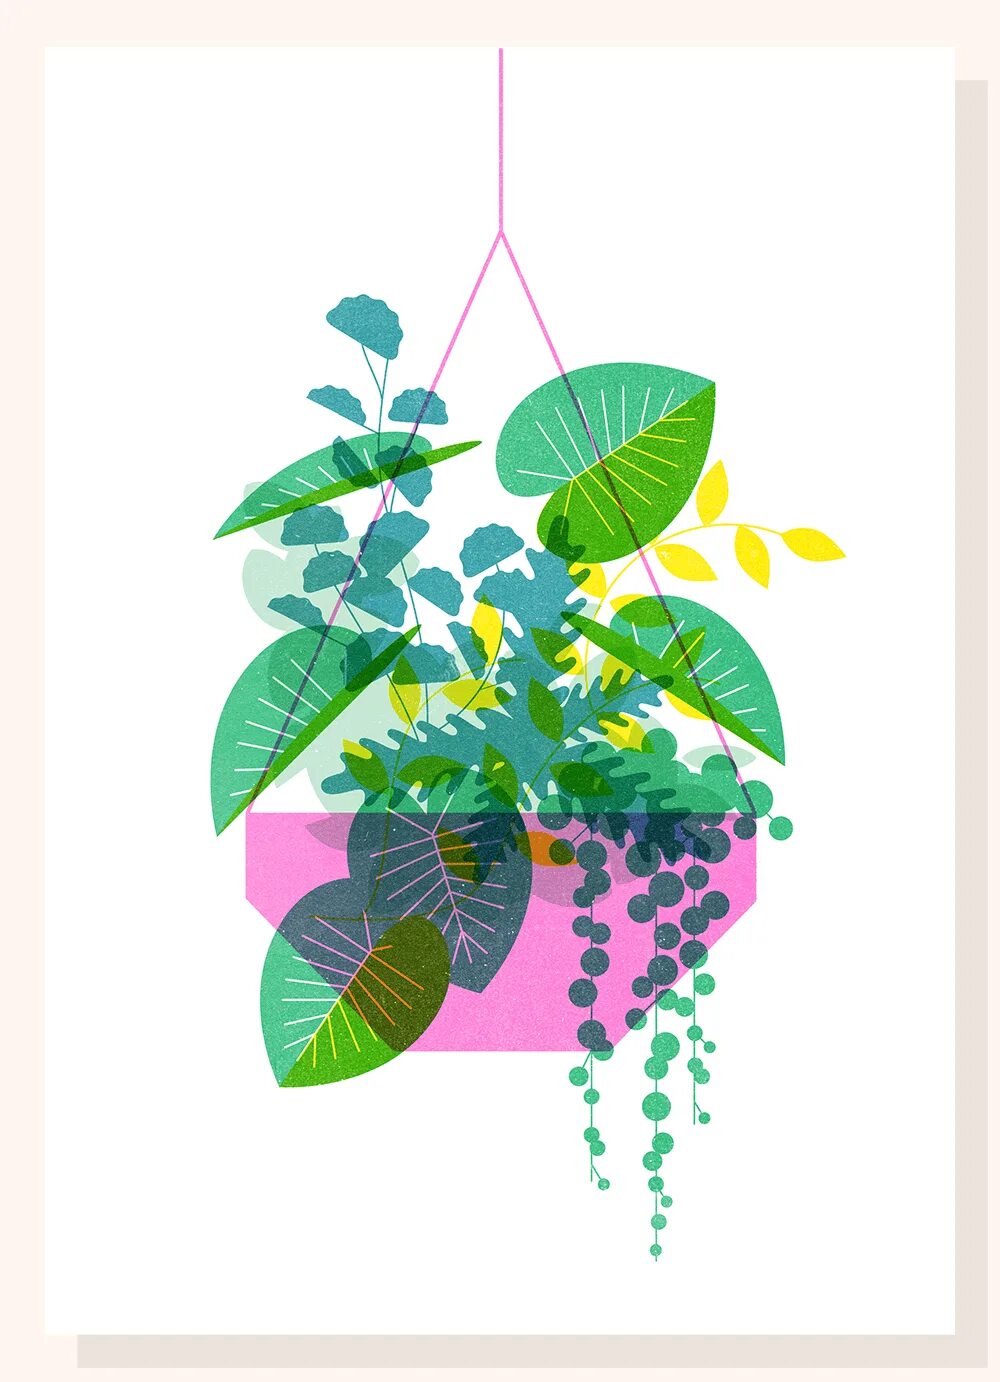 Plant series. Растения дизайн графический. Растения Flat иллюстрация. Флэт иллюстрации цветов. Комнатные растения плоский дизайн.